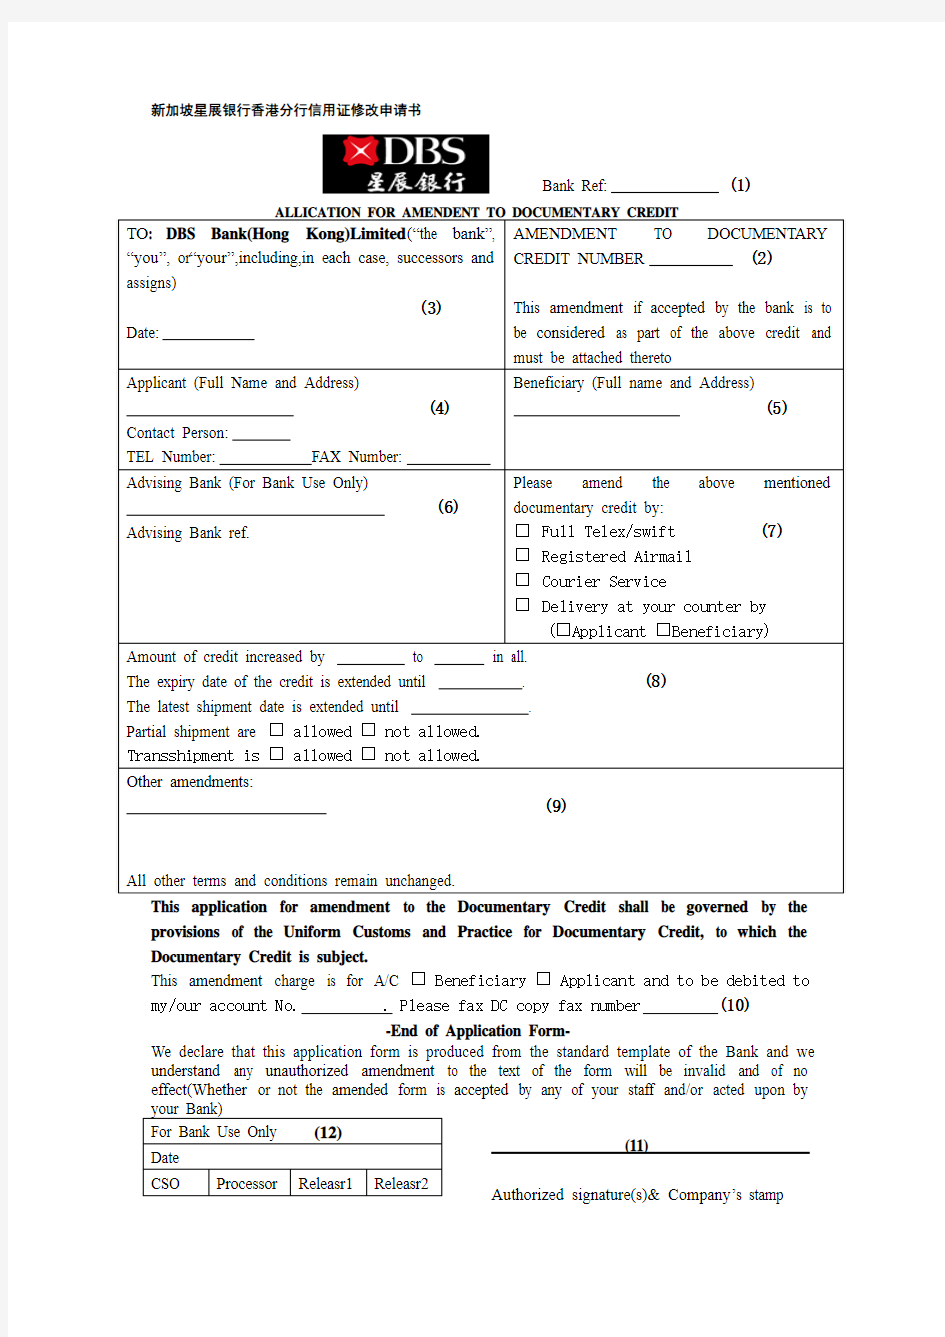 新加坡星展银行香港分行信用证修改申请书解读